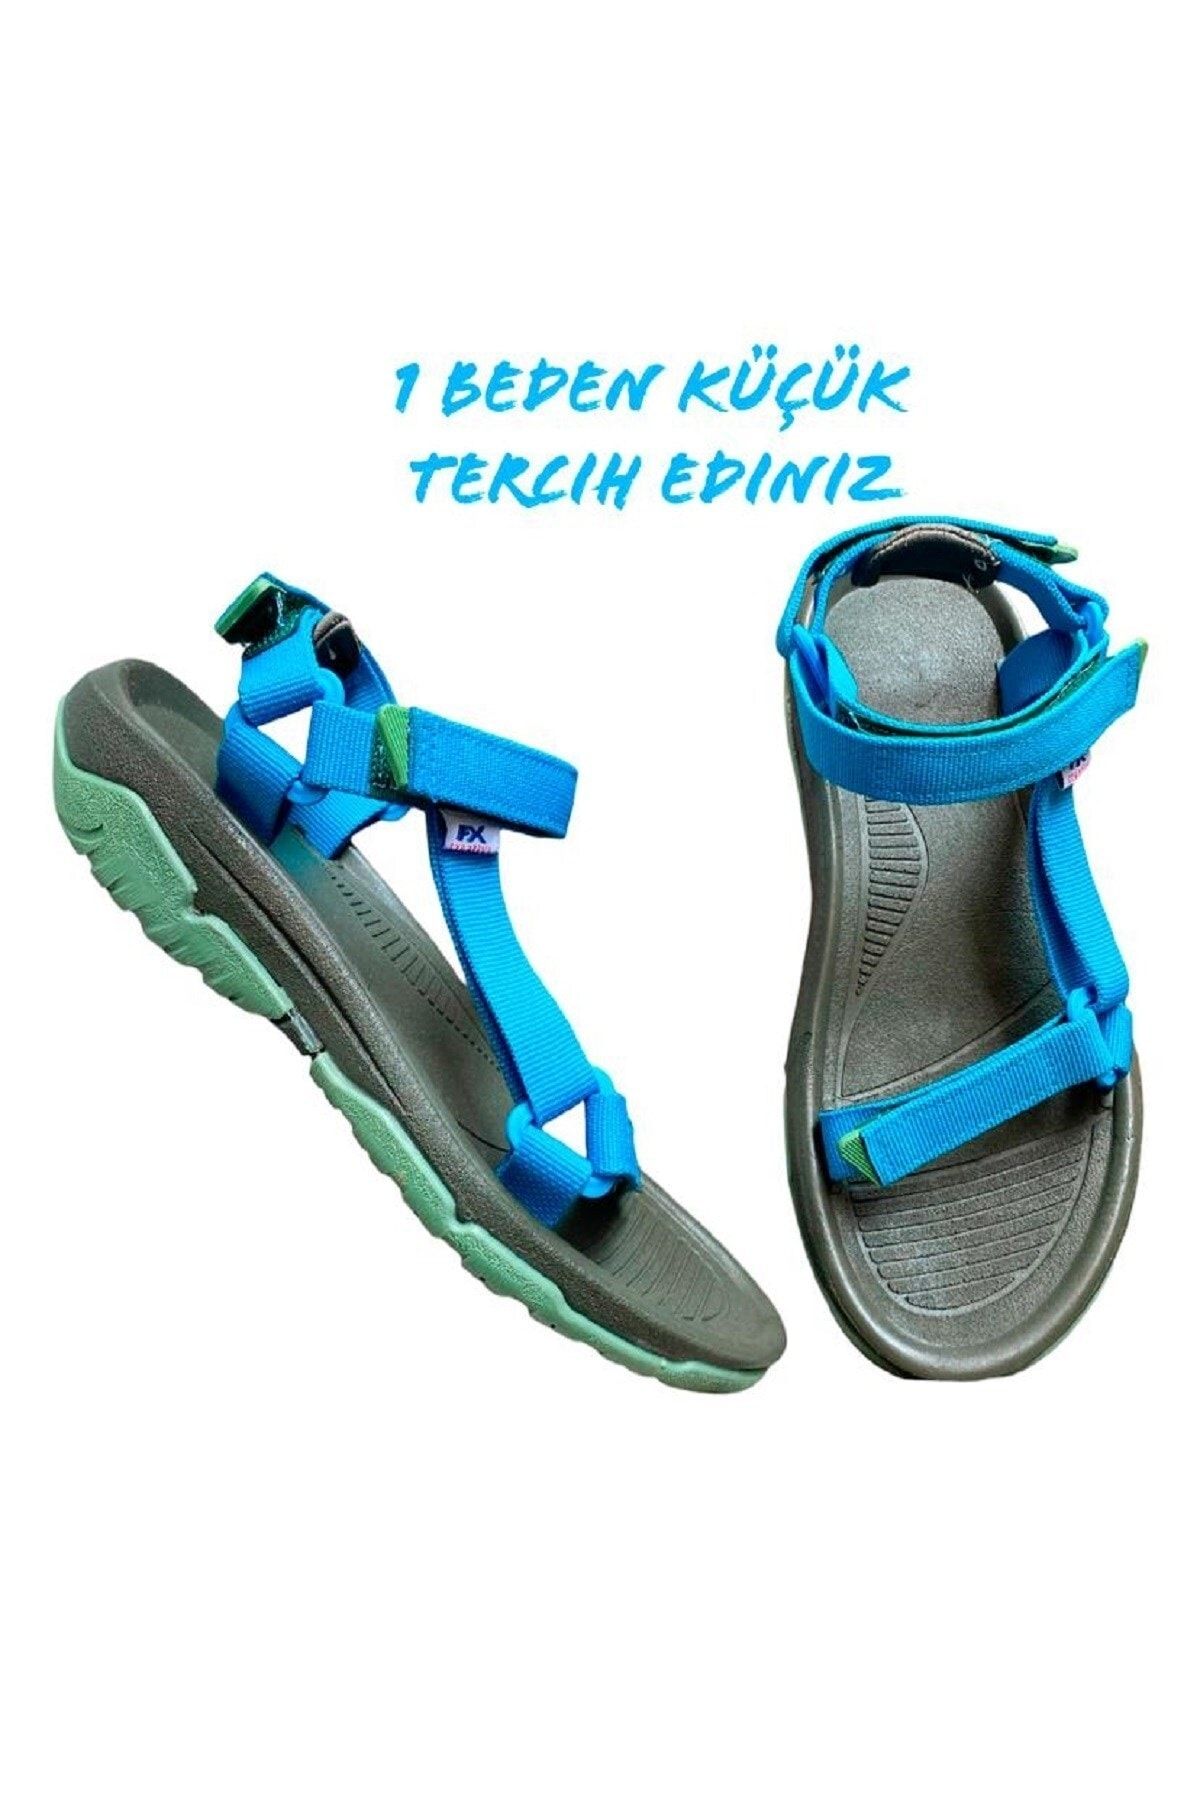 ALTUNTAŞ Fx Kaymaz Taban Cırt Cırtlı Çocuk Spor Sandalet Modeli - Haki Mavi ( Geniş Kalıp )